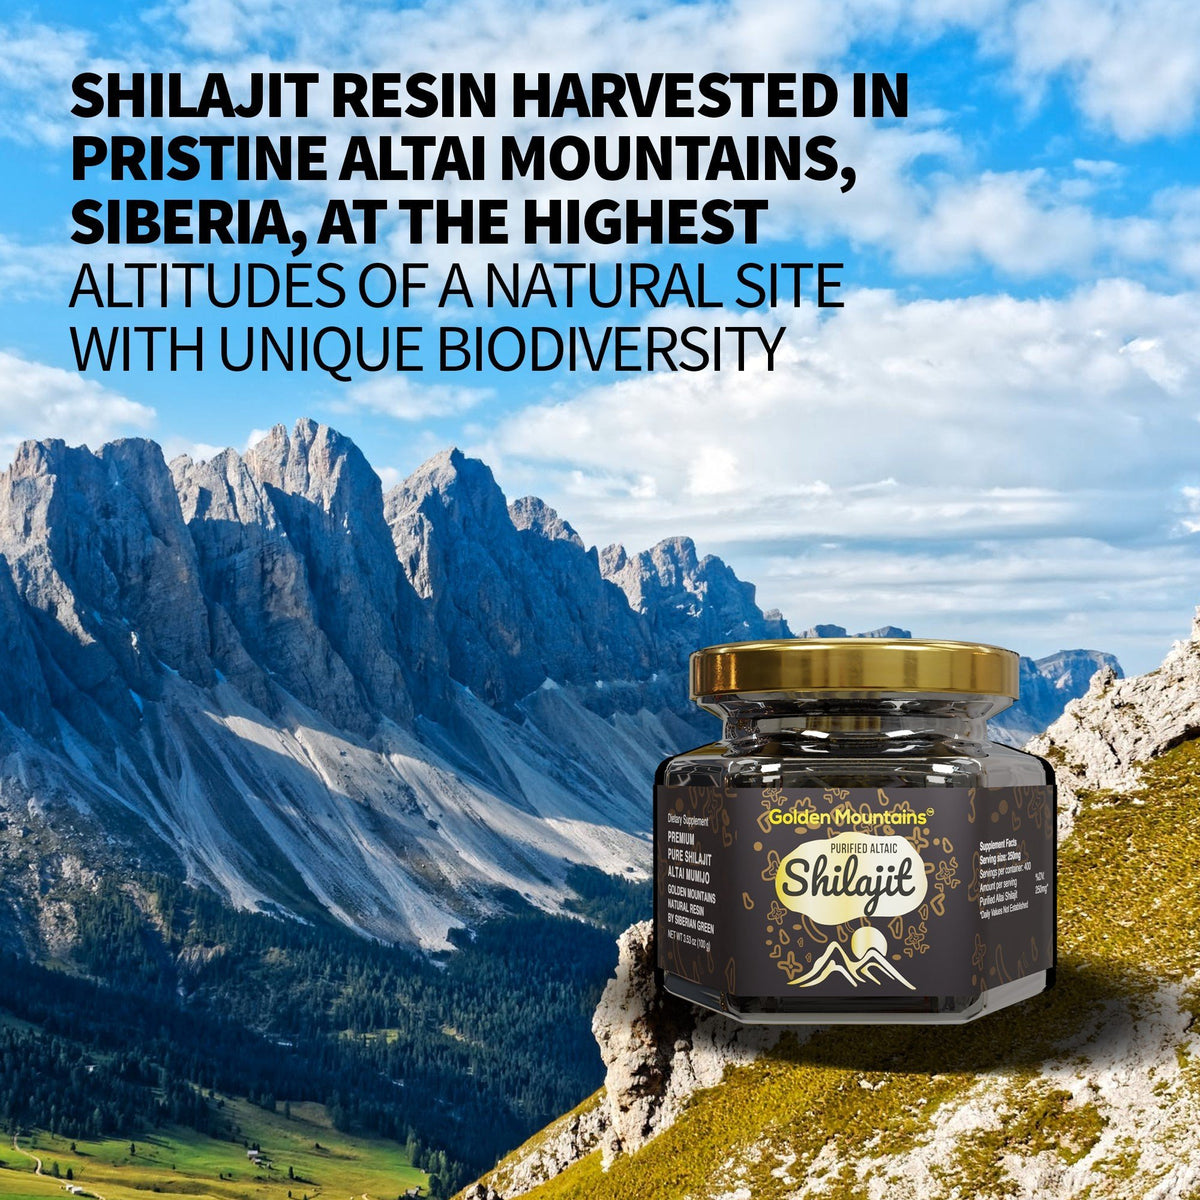 Golden Mountains Shilajit Résine Premium Pure Authentique Sibérie Altaï 100 g 3,53 oz – Cuillère à mesurer – Certificat de qualité exclusif